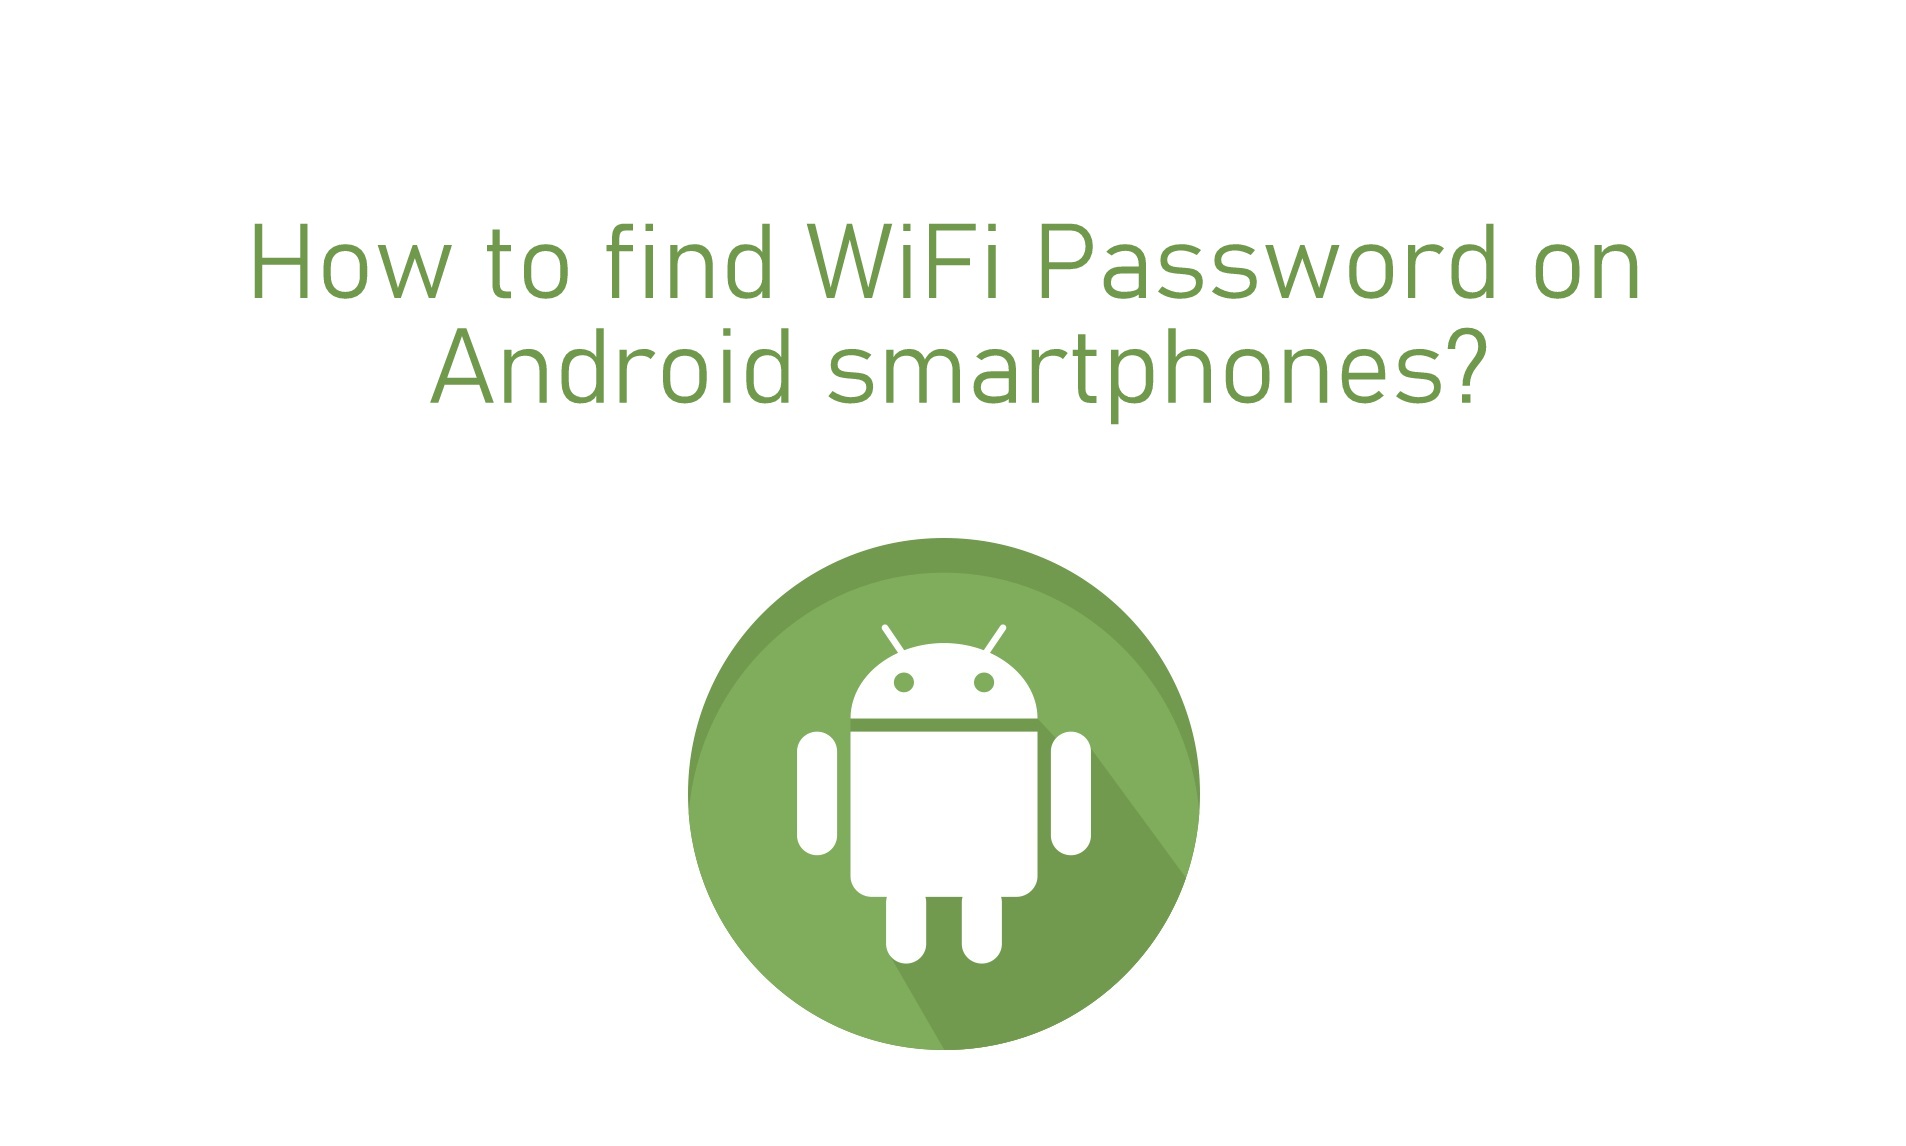 Nola aurkitu WiFi pasahitza Android-en smartphones
